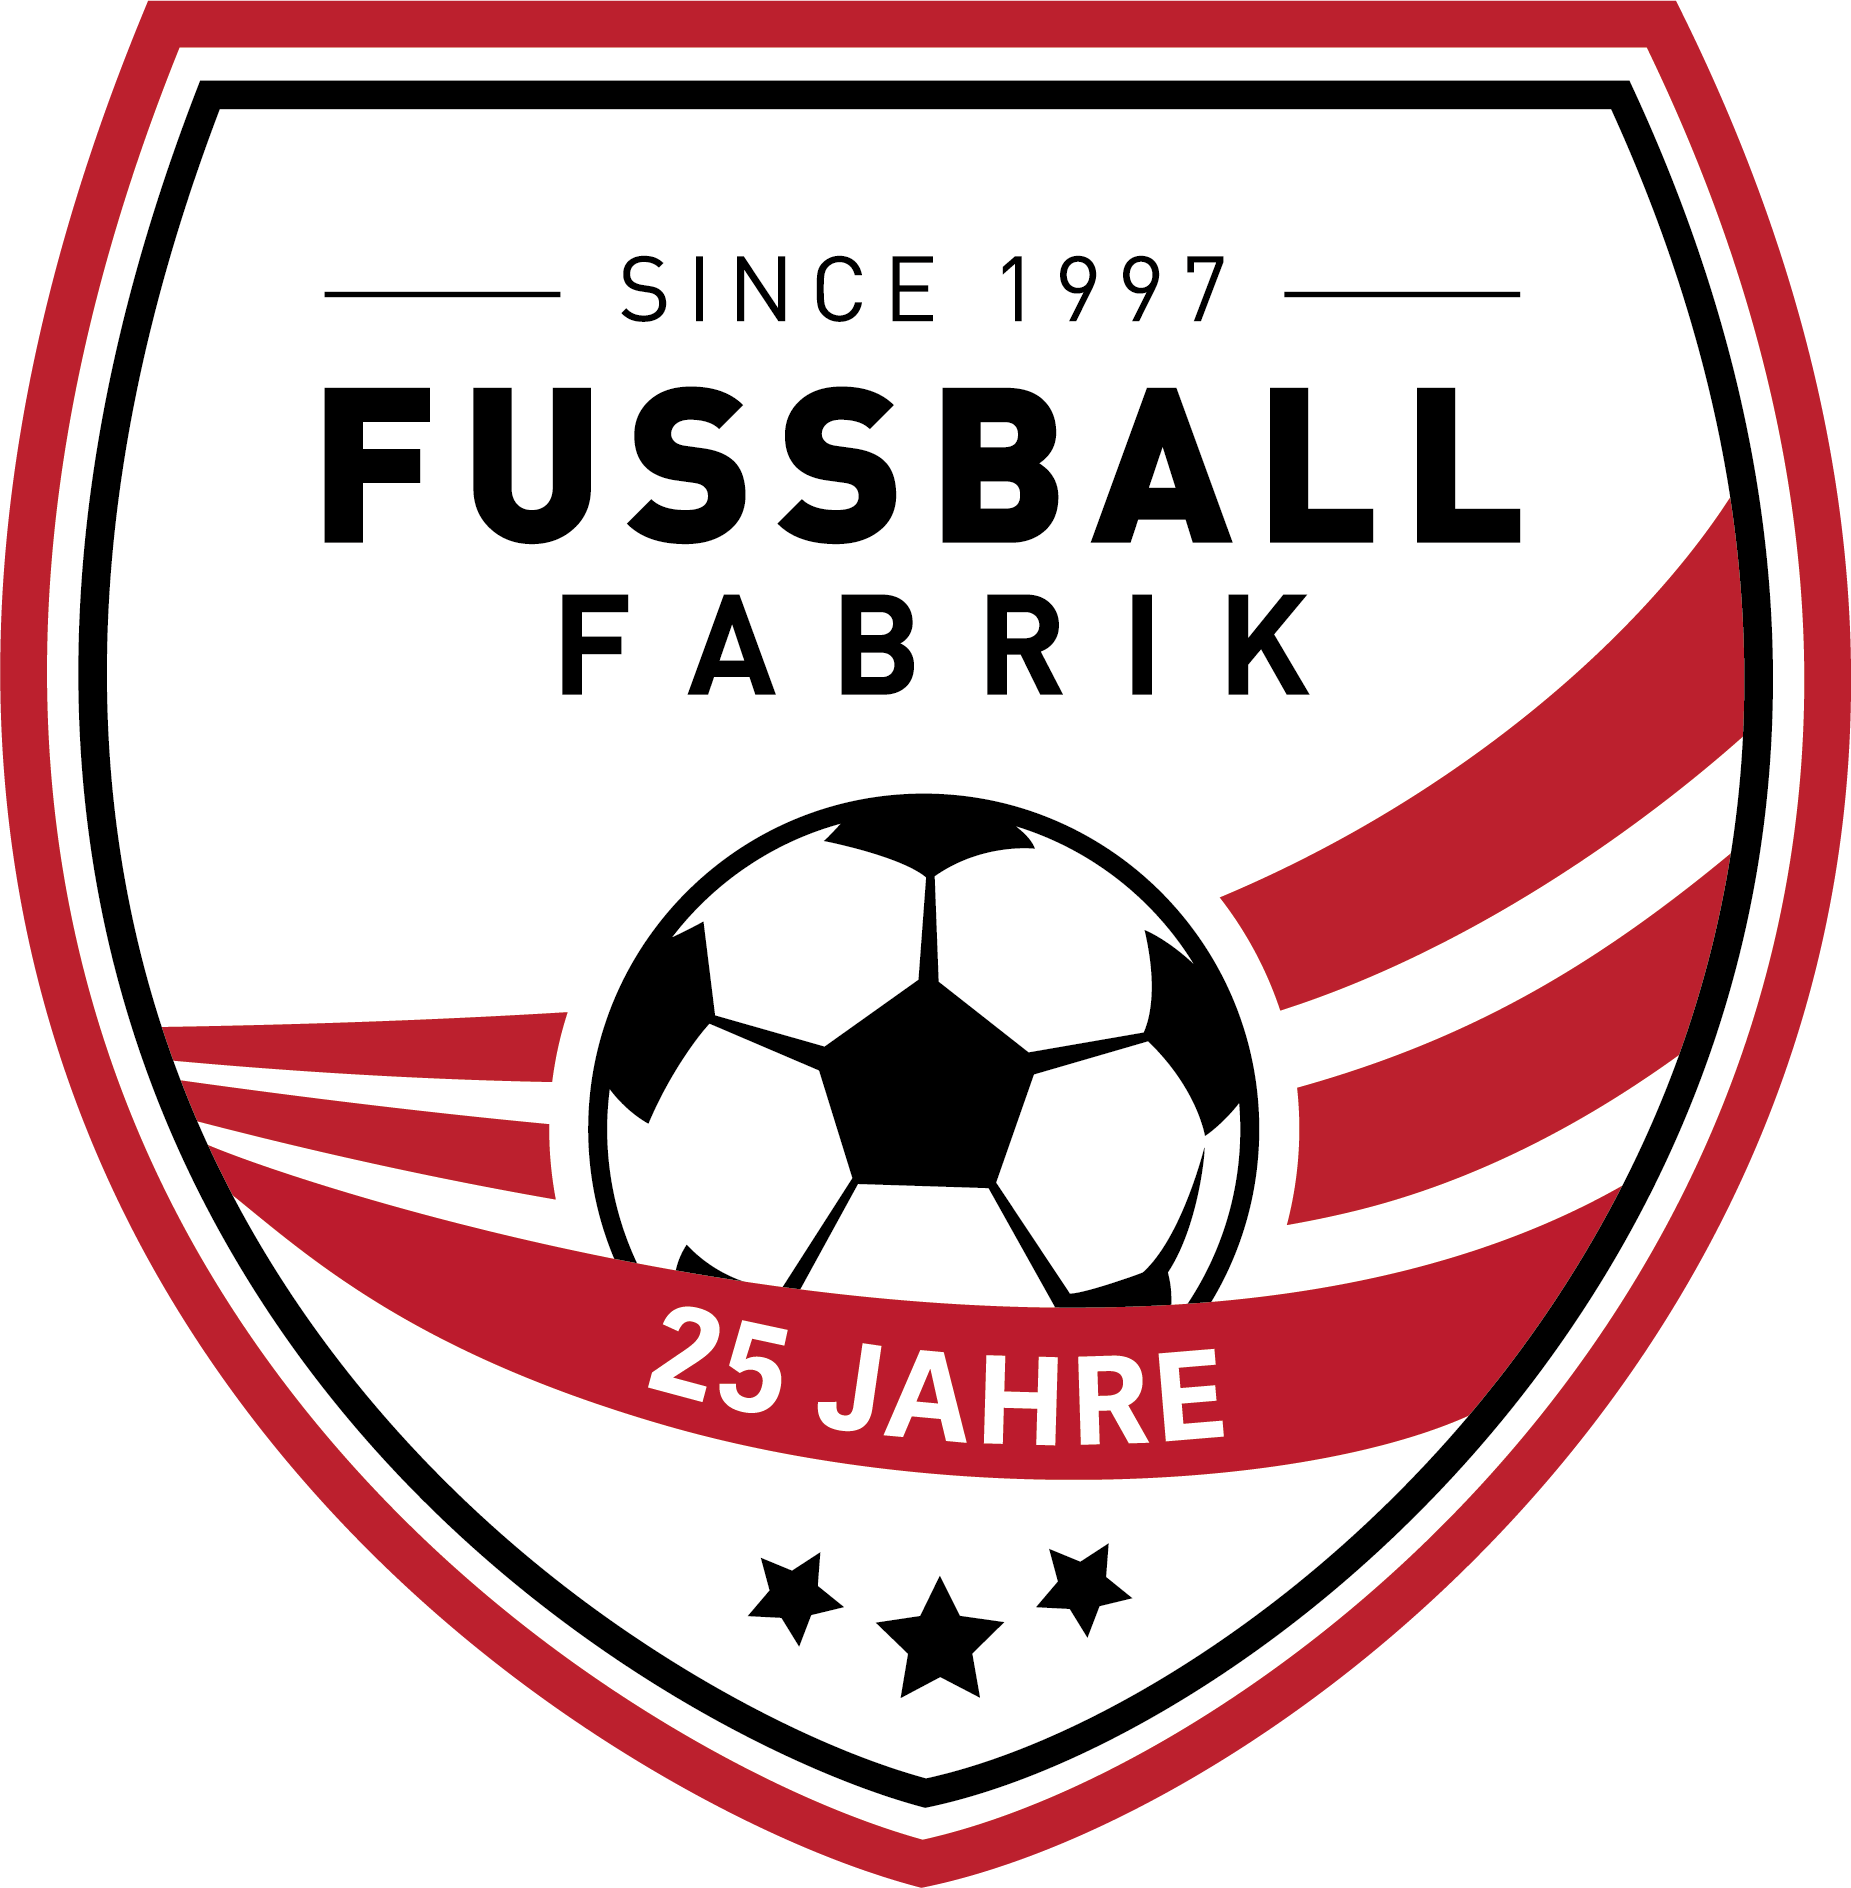 http://fussballfabrik.com